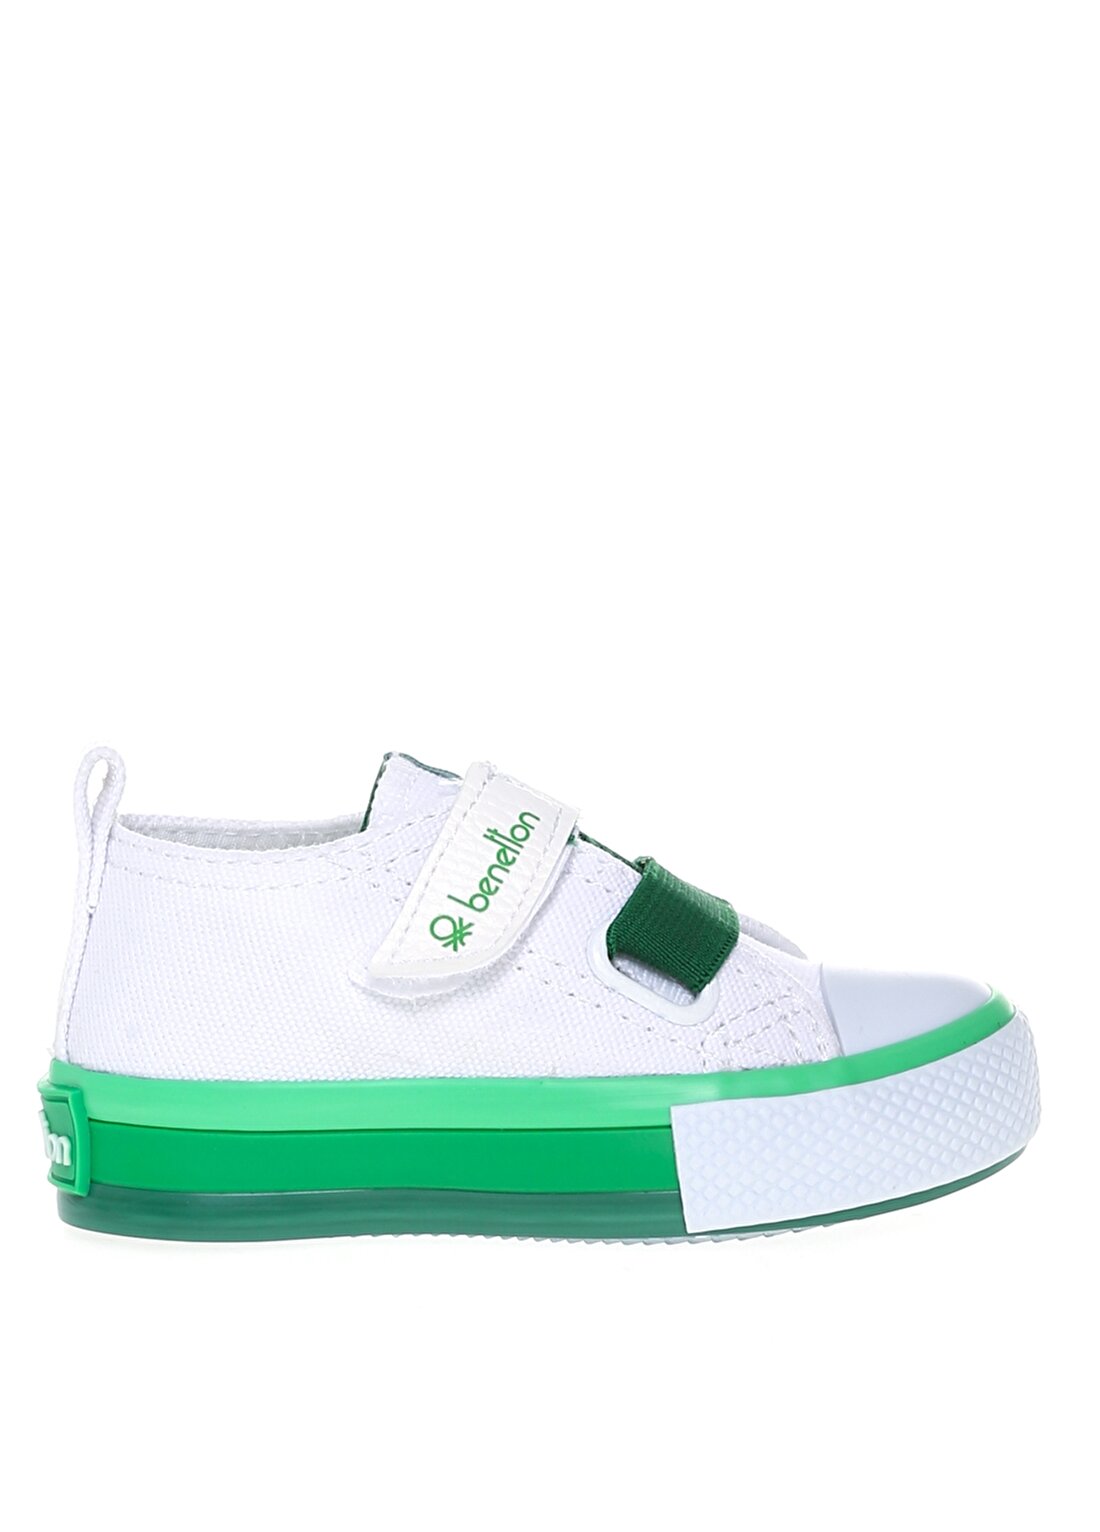 Benetton Beyaz - Yeşil Bebek Yürüyüş Ayakkabısı BN-30648 178-Beyaz-Yesil